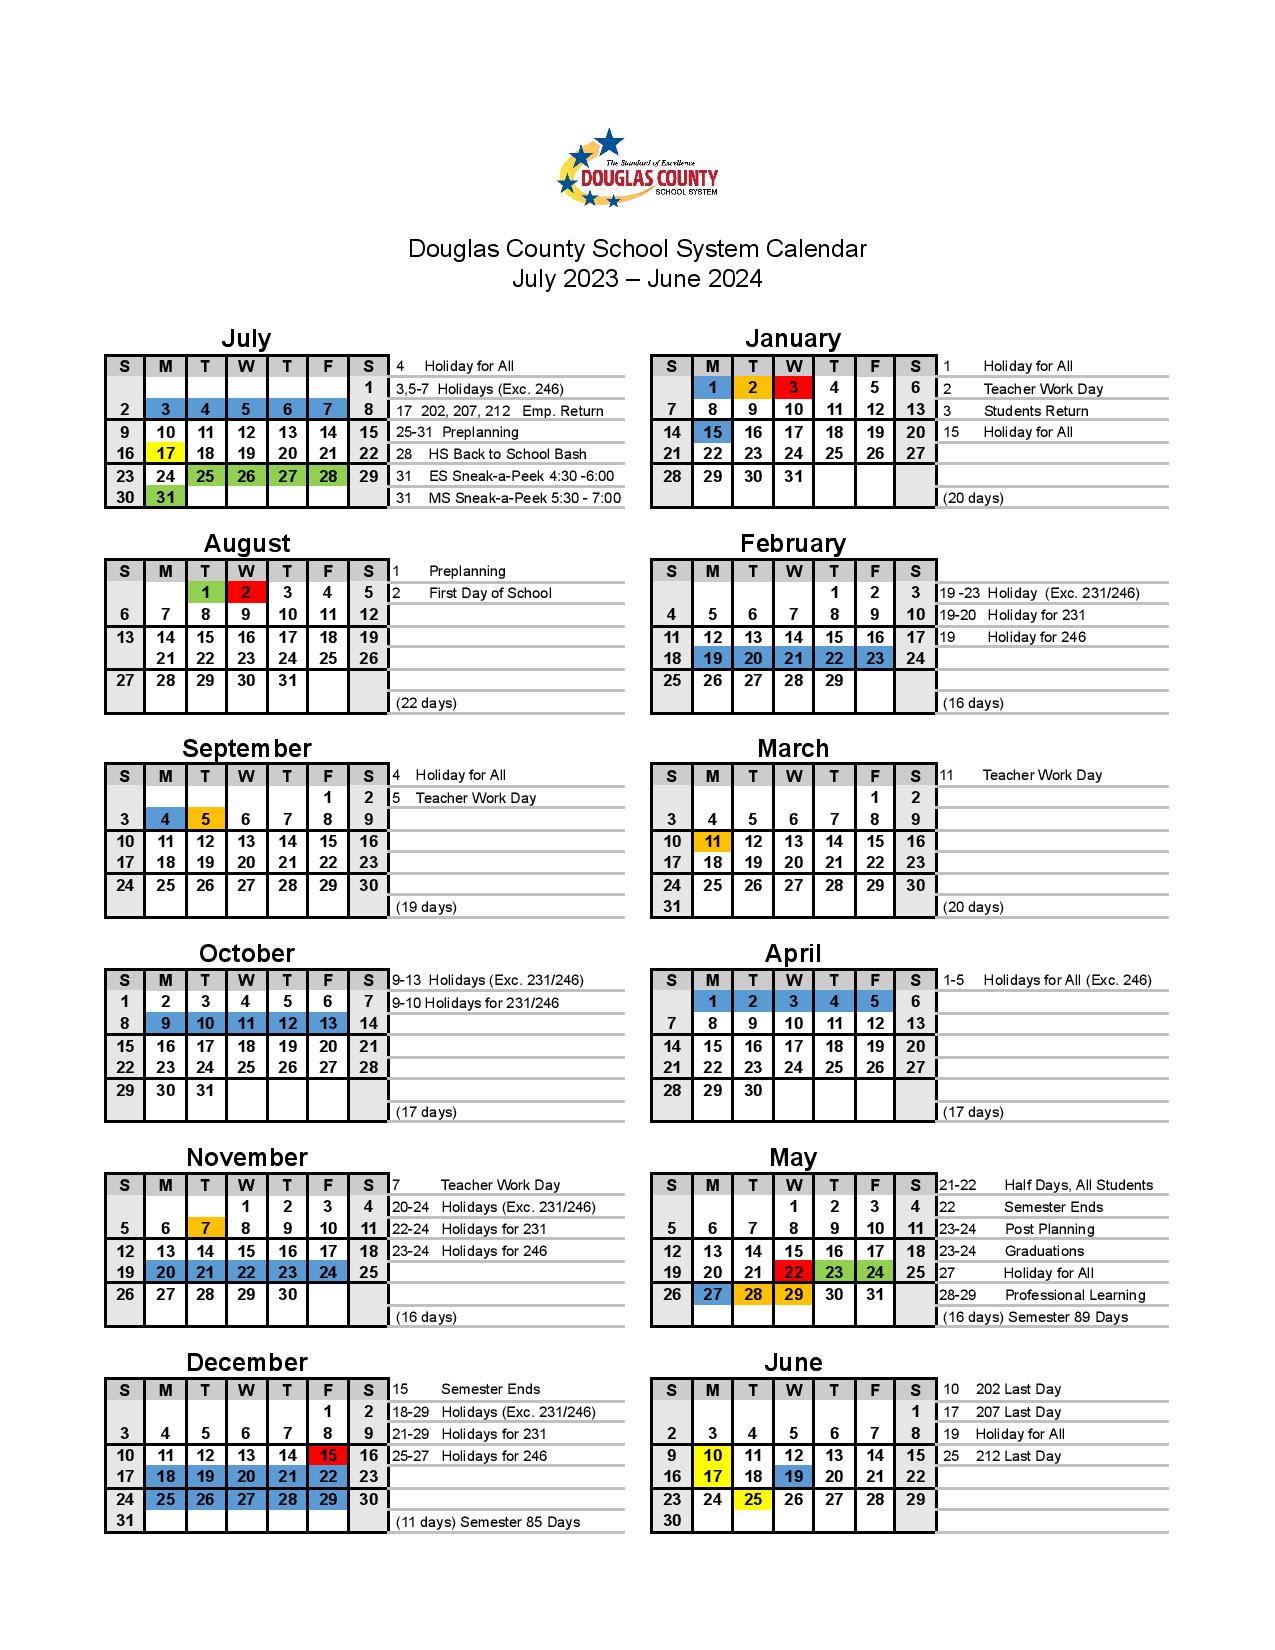 douglas-county-schools-calendar-2023-2024-in-pdf